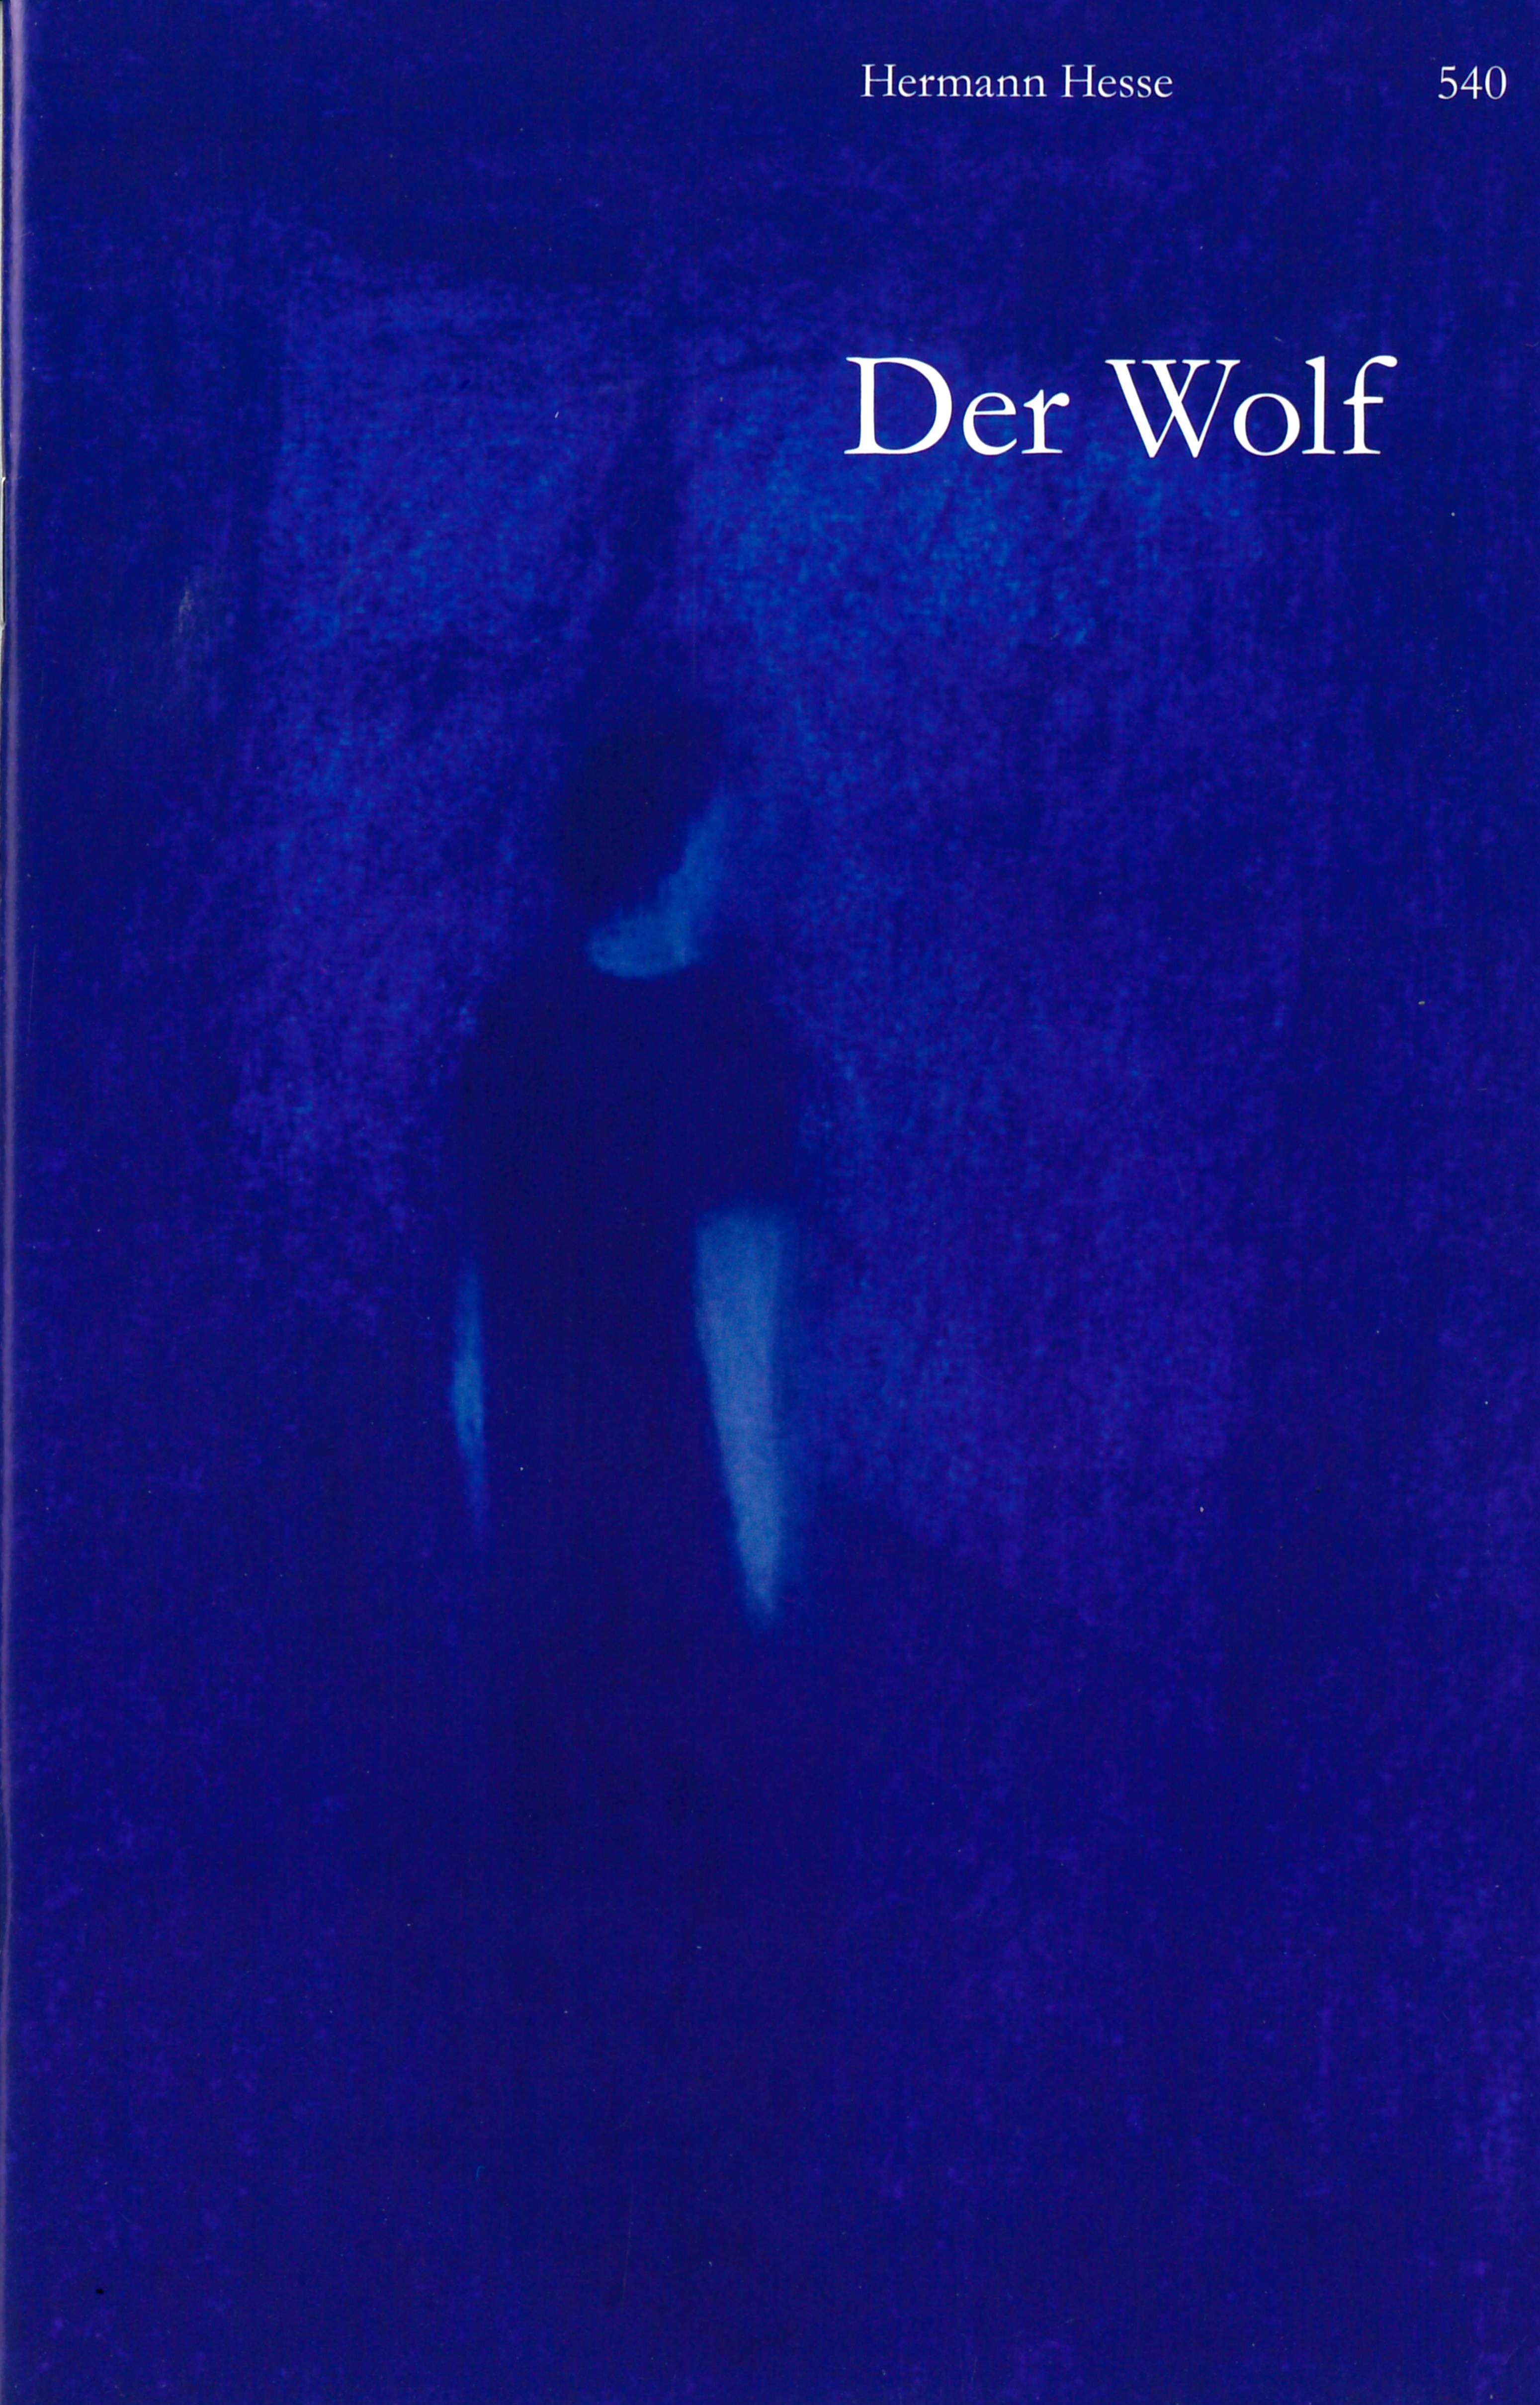 Der Wolf, ein Buch von Hermann Hesse, Illustration von Juana Robles, SJW Verlag, Klassiker, Schweizer Literatur